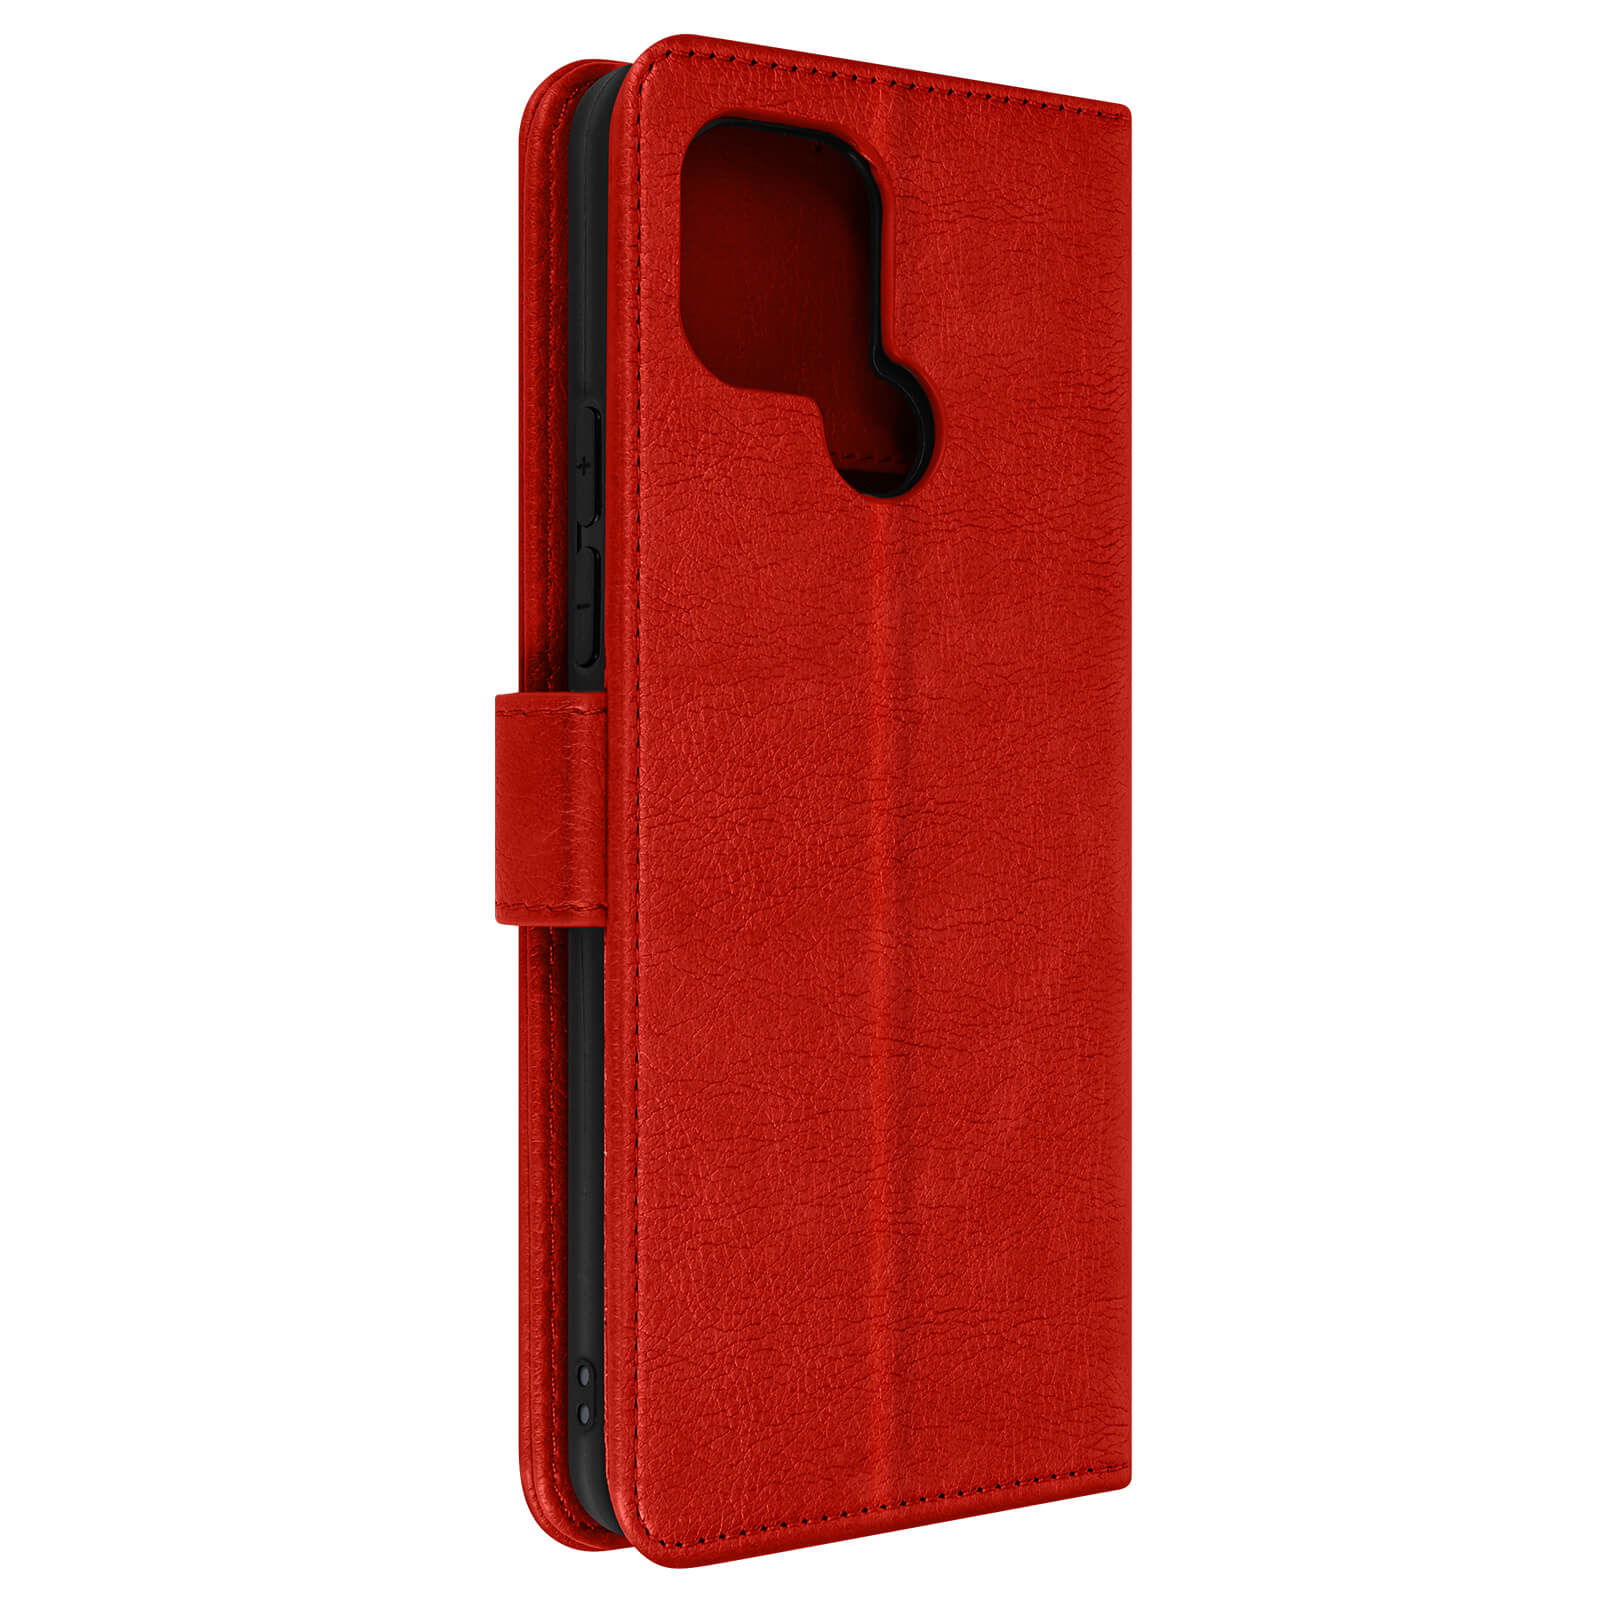 Rot Series, AVIZAR A2, Chesterfield Xiaomi, Redmi Bookcover,